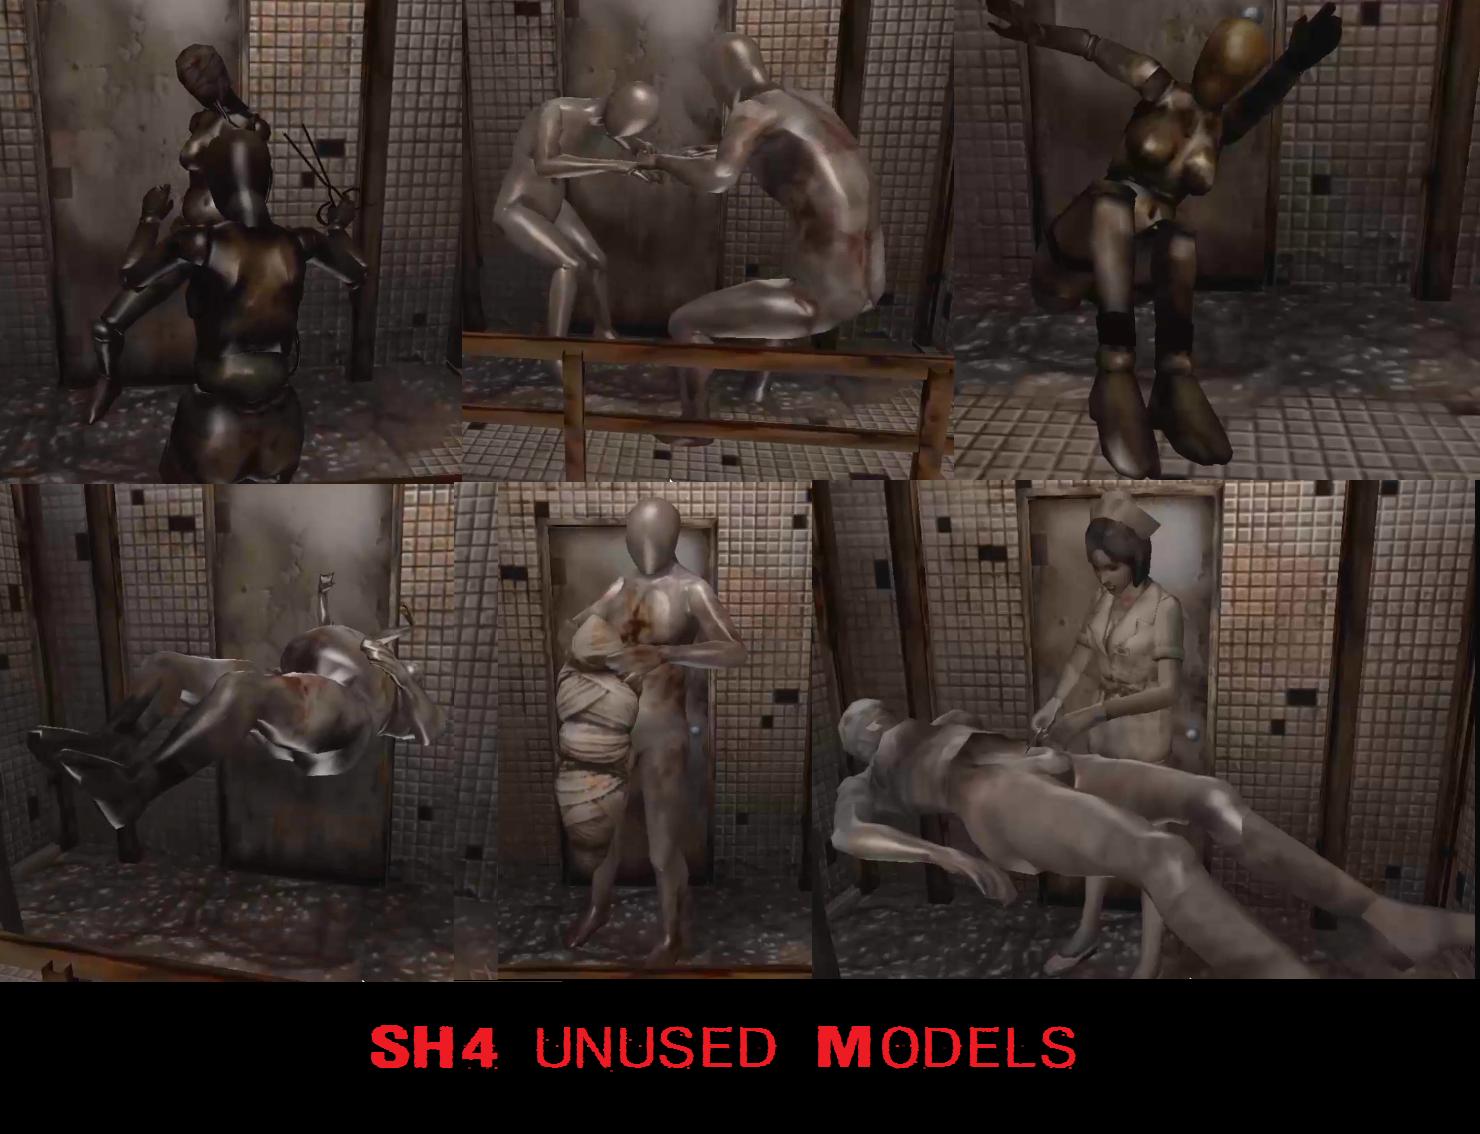 sh4 unused models 2.jpg